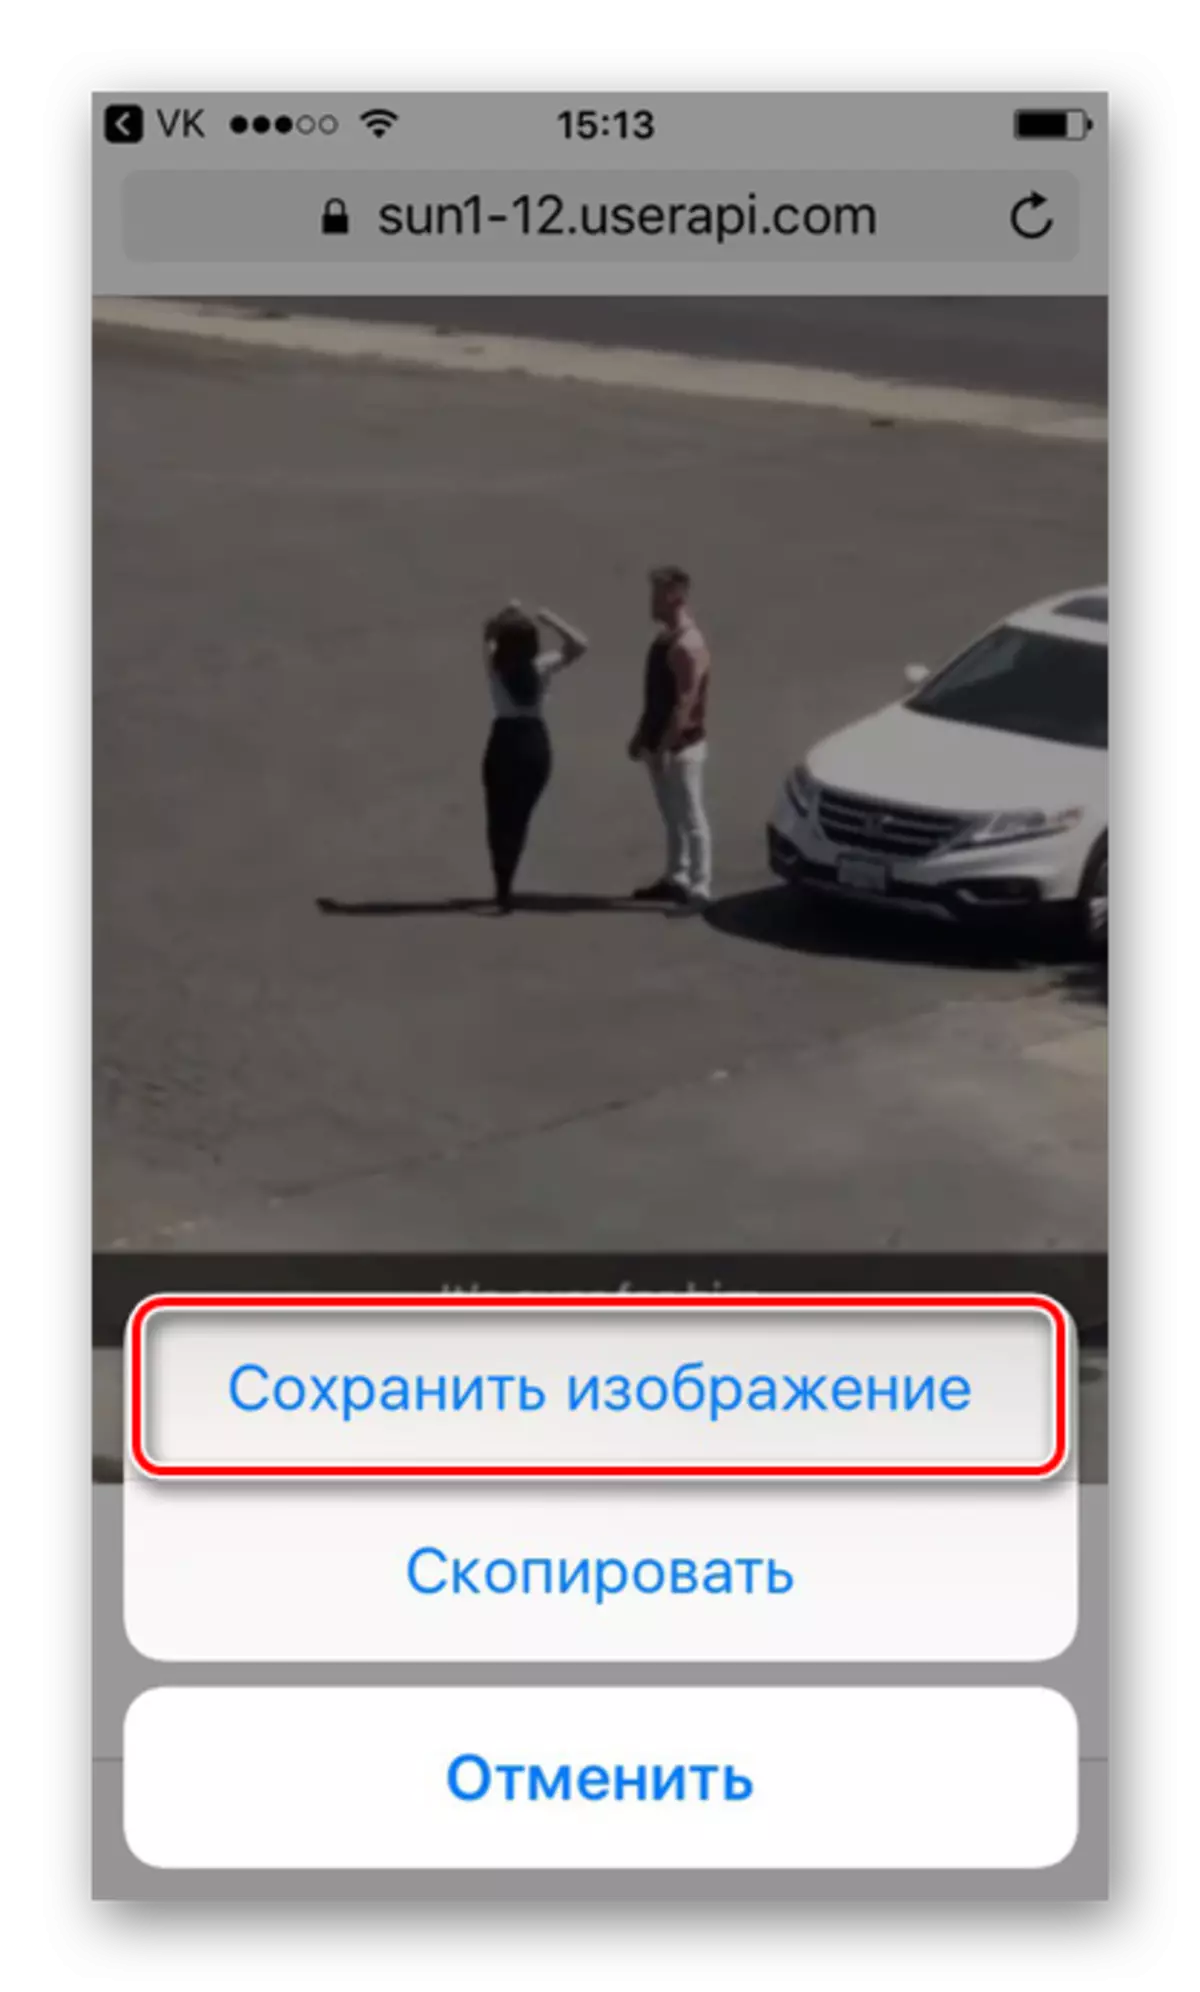 IPhone හි සෆාරි බ්රව්සරය හරහා Vkontakte වෙතින් Gifs බේරා ගැනීම